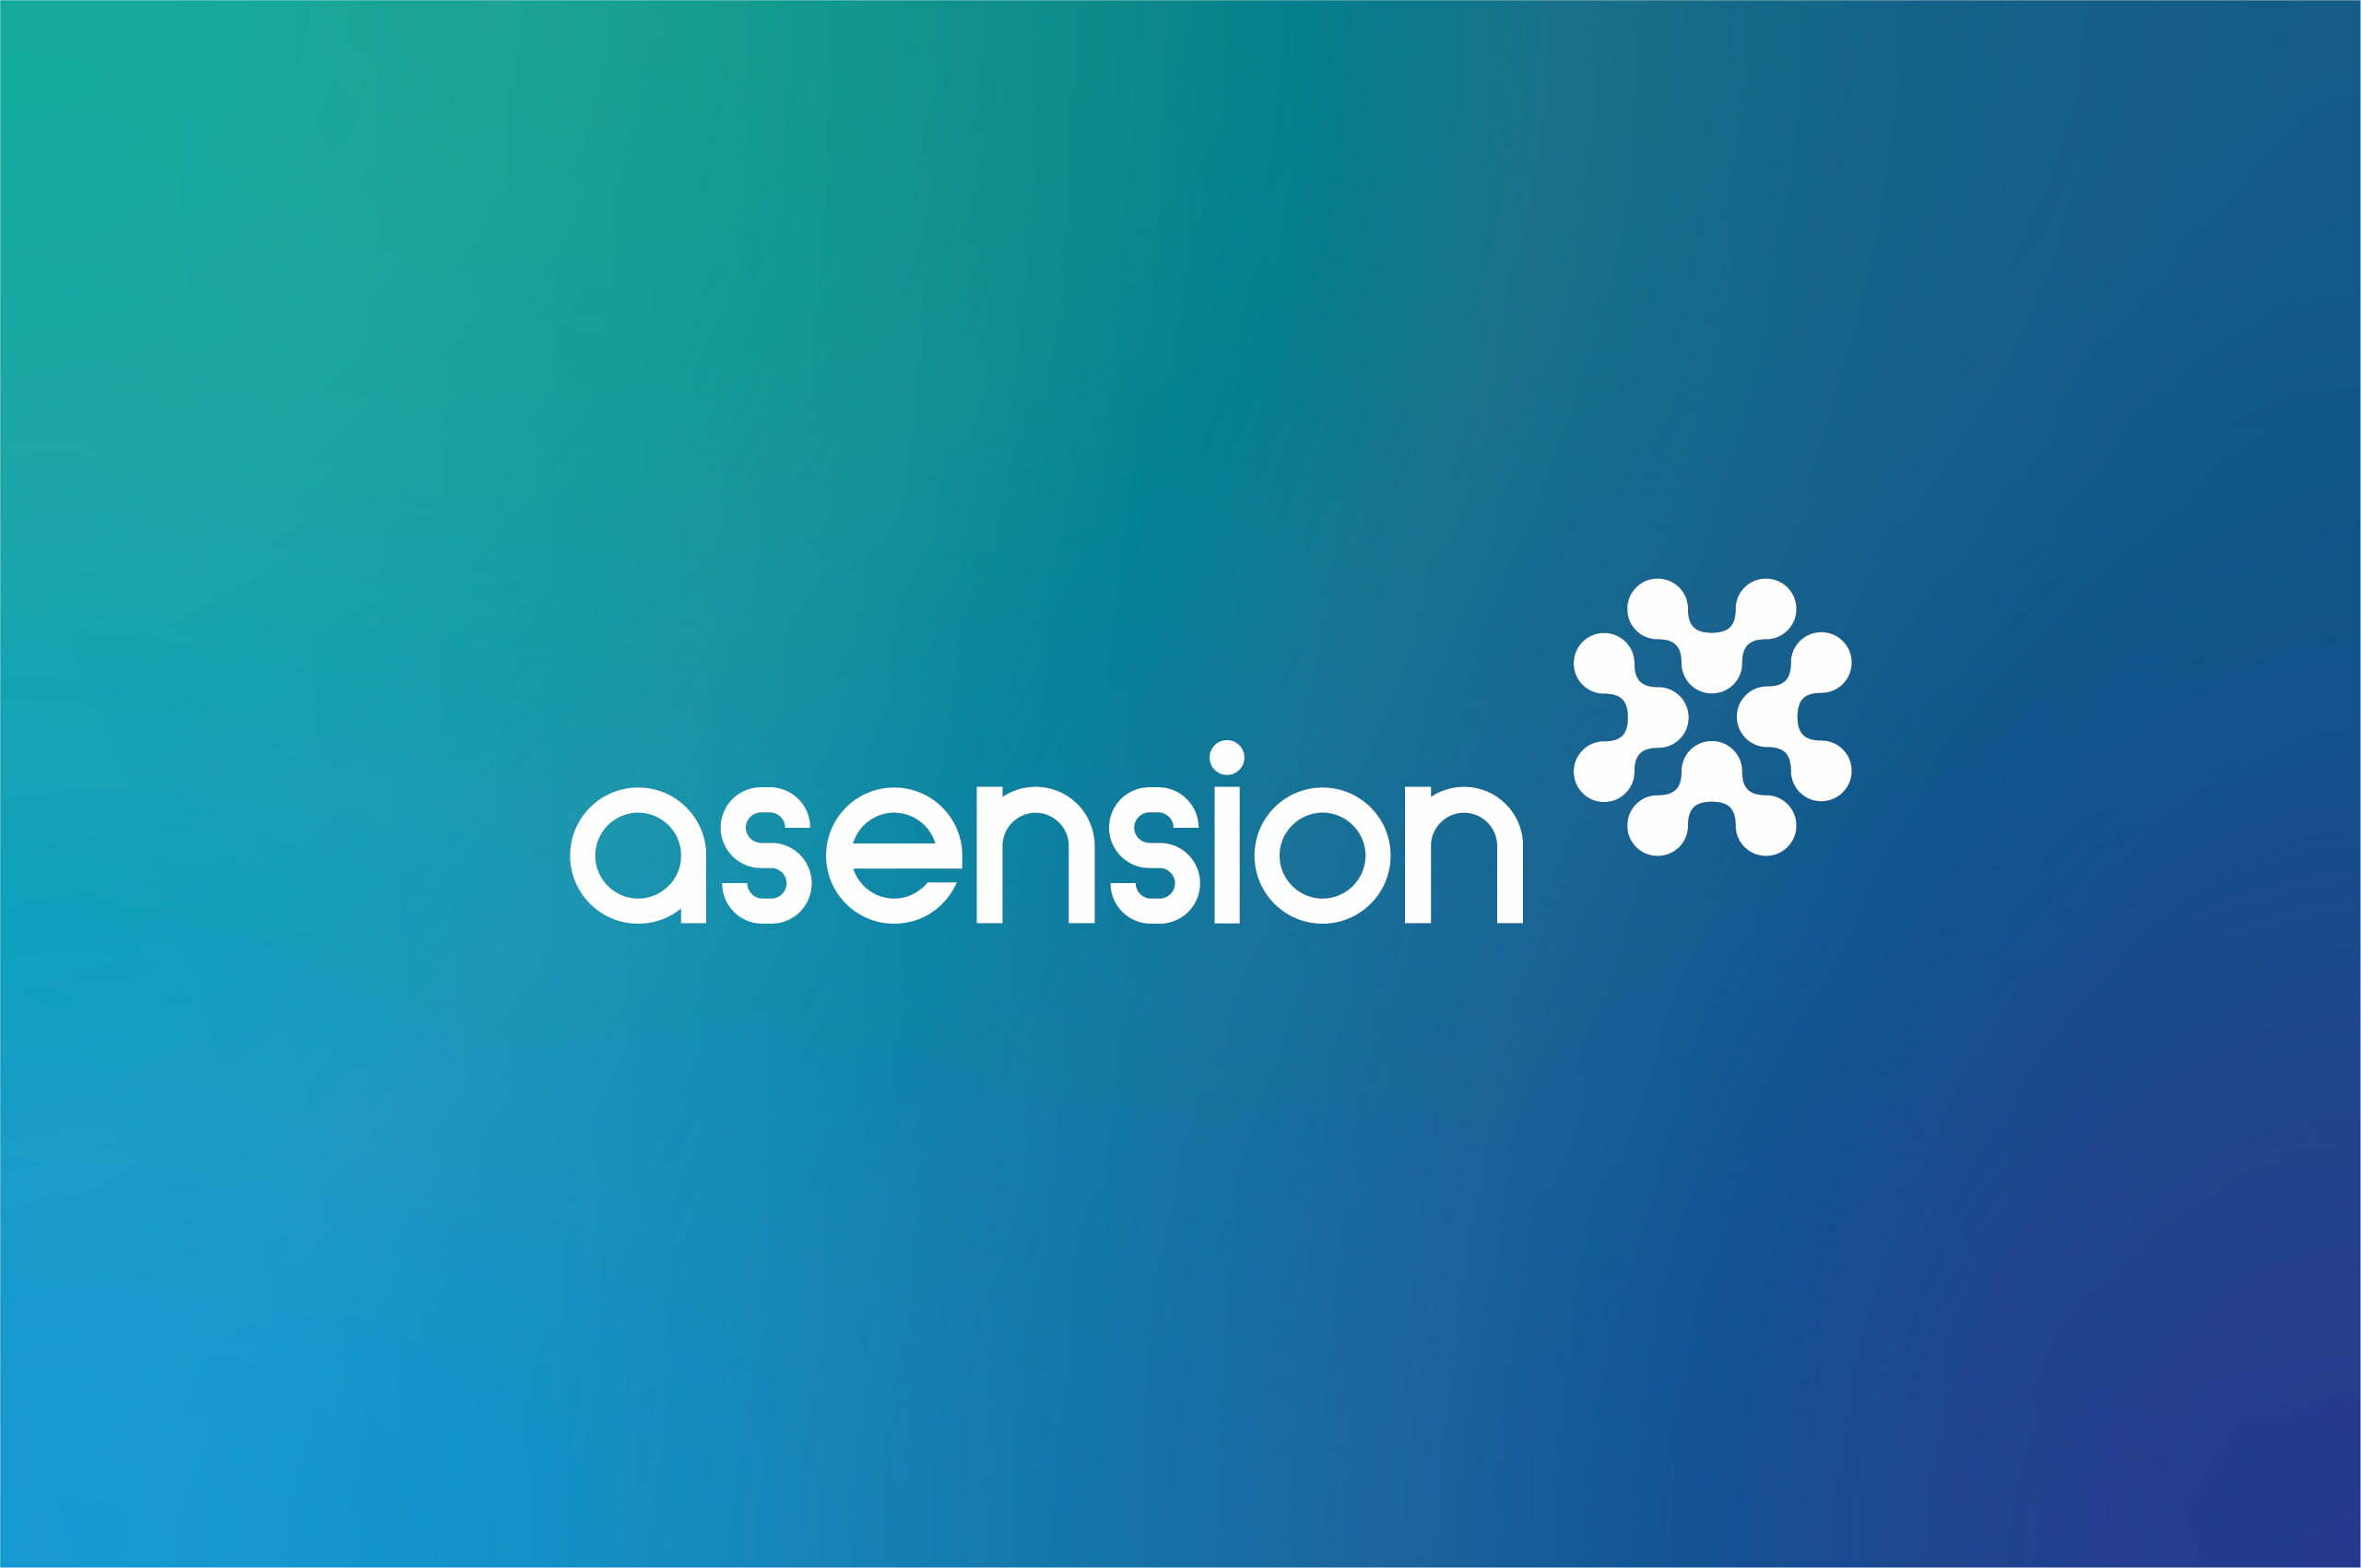 Asension Logo Identity